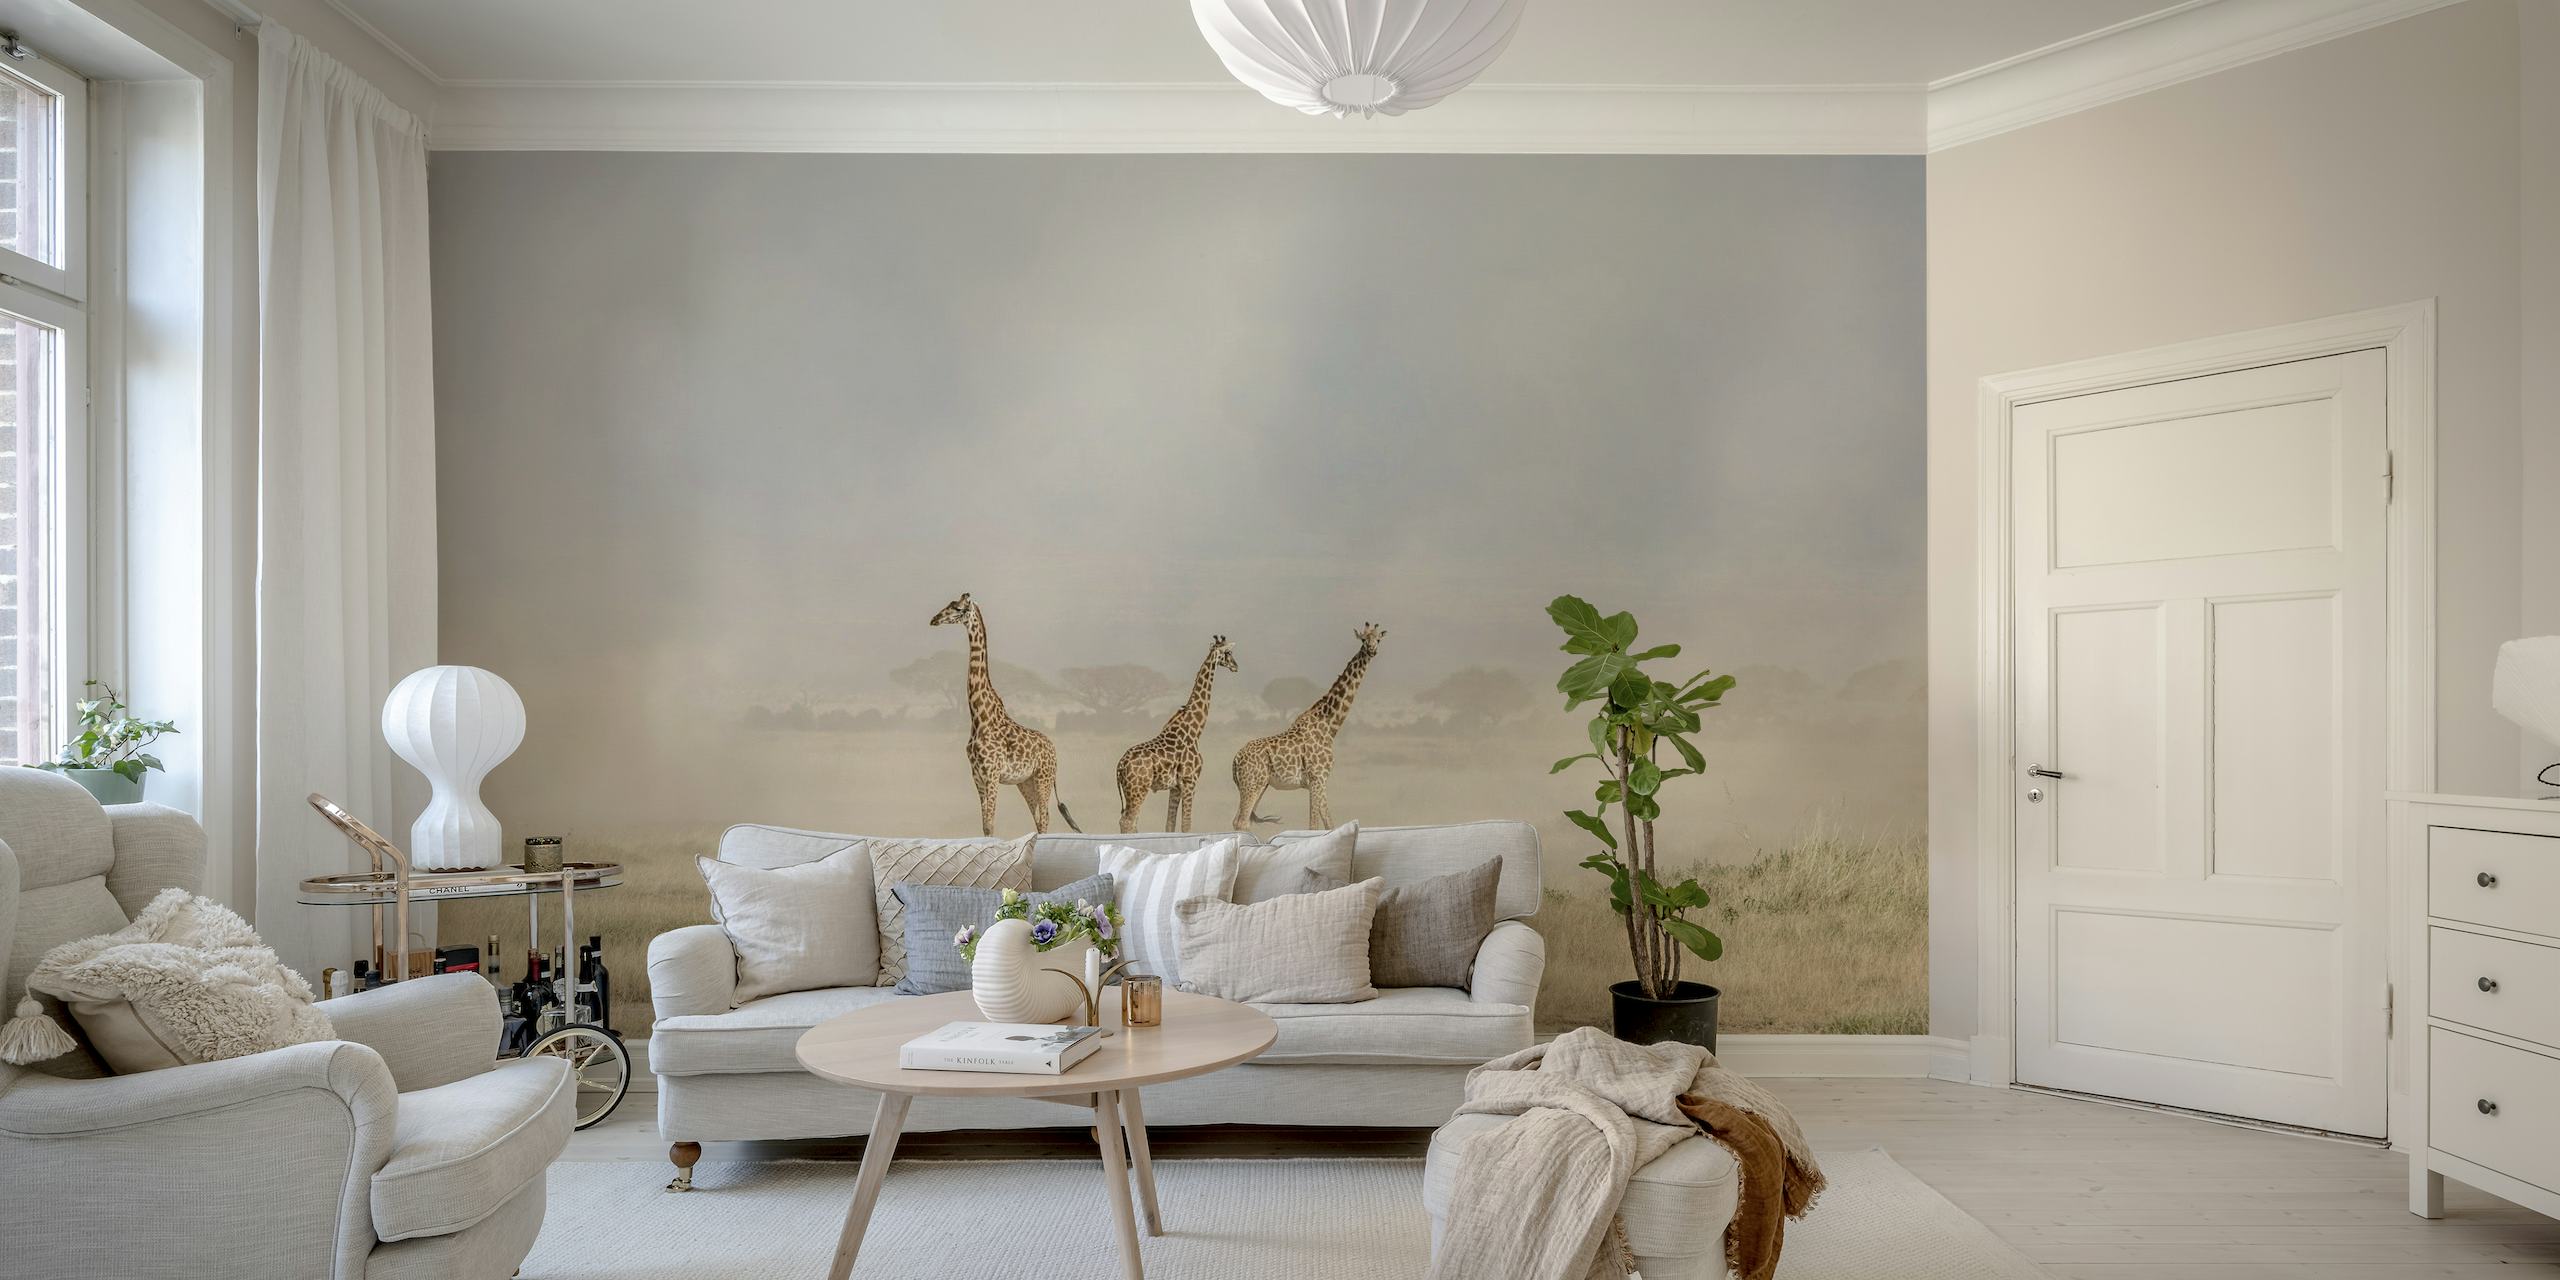 Et vægmaleri, der forestiller giraffer i det støvede Amboseli-landskab med støvdjævle i baggrunden.